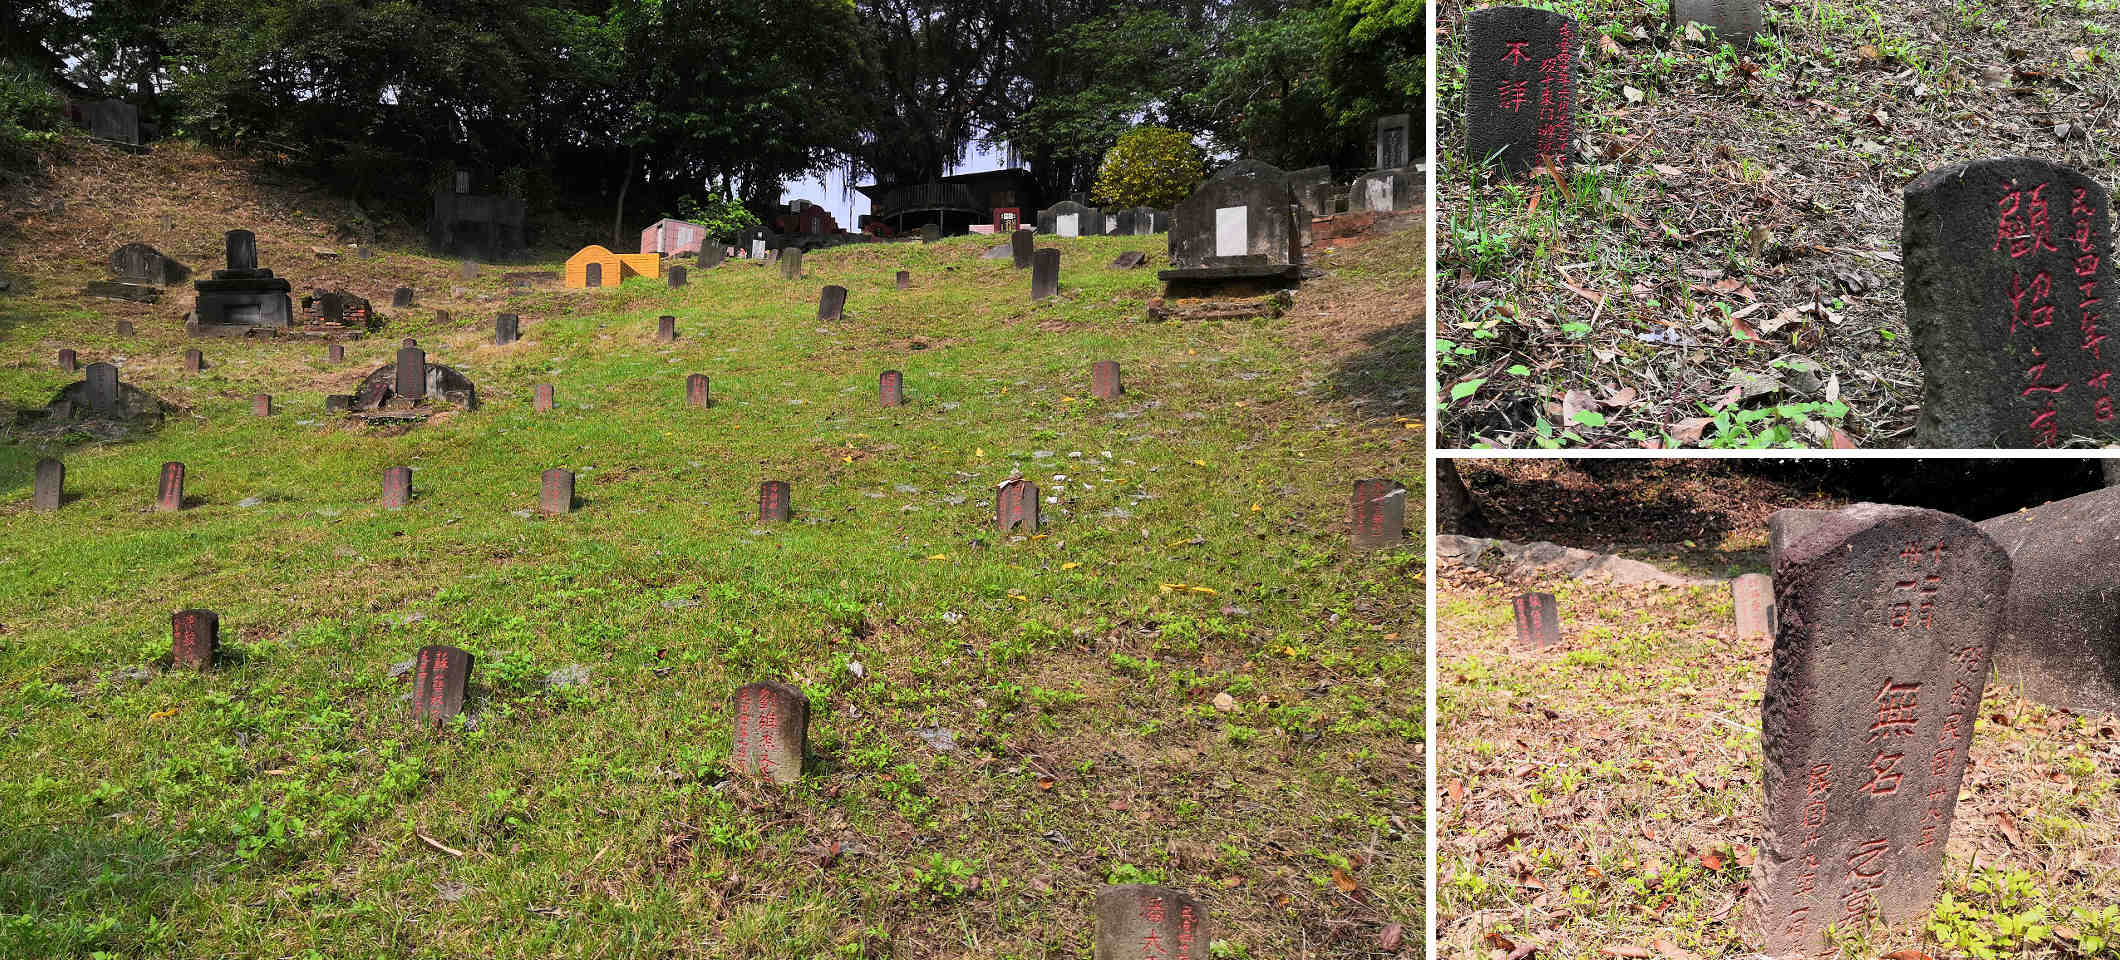 臺北市六張犁還留有幾百具當年白恐槍決後草草埋下的屍骨，墓碑上有些甚至沒有墓主姓名。